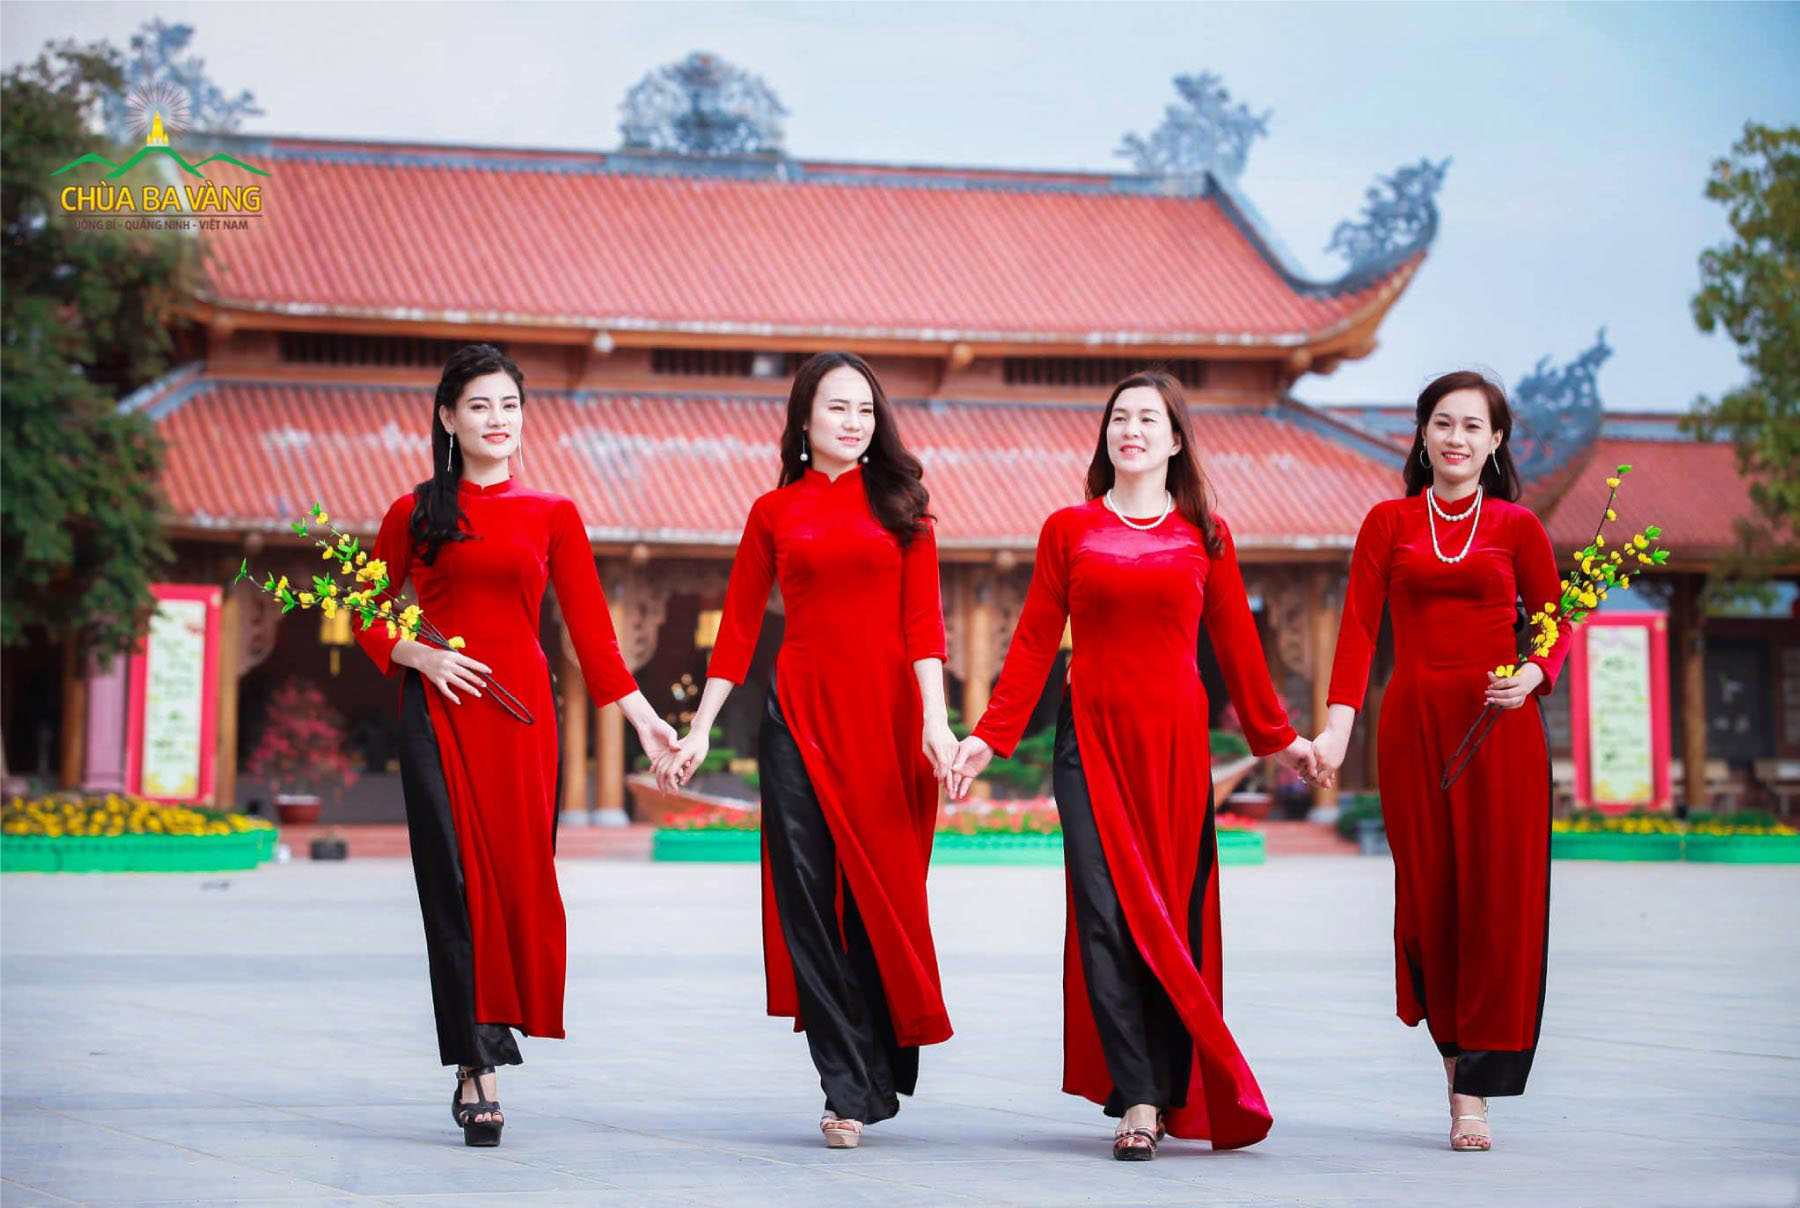 Áo dài là một phần văn hóa nói lên nhân quan và gói trọn tinh thần dân tộc Việt.